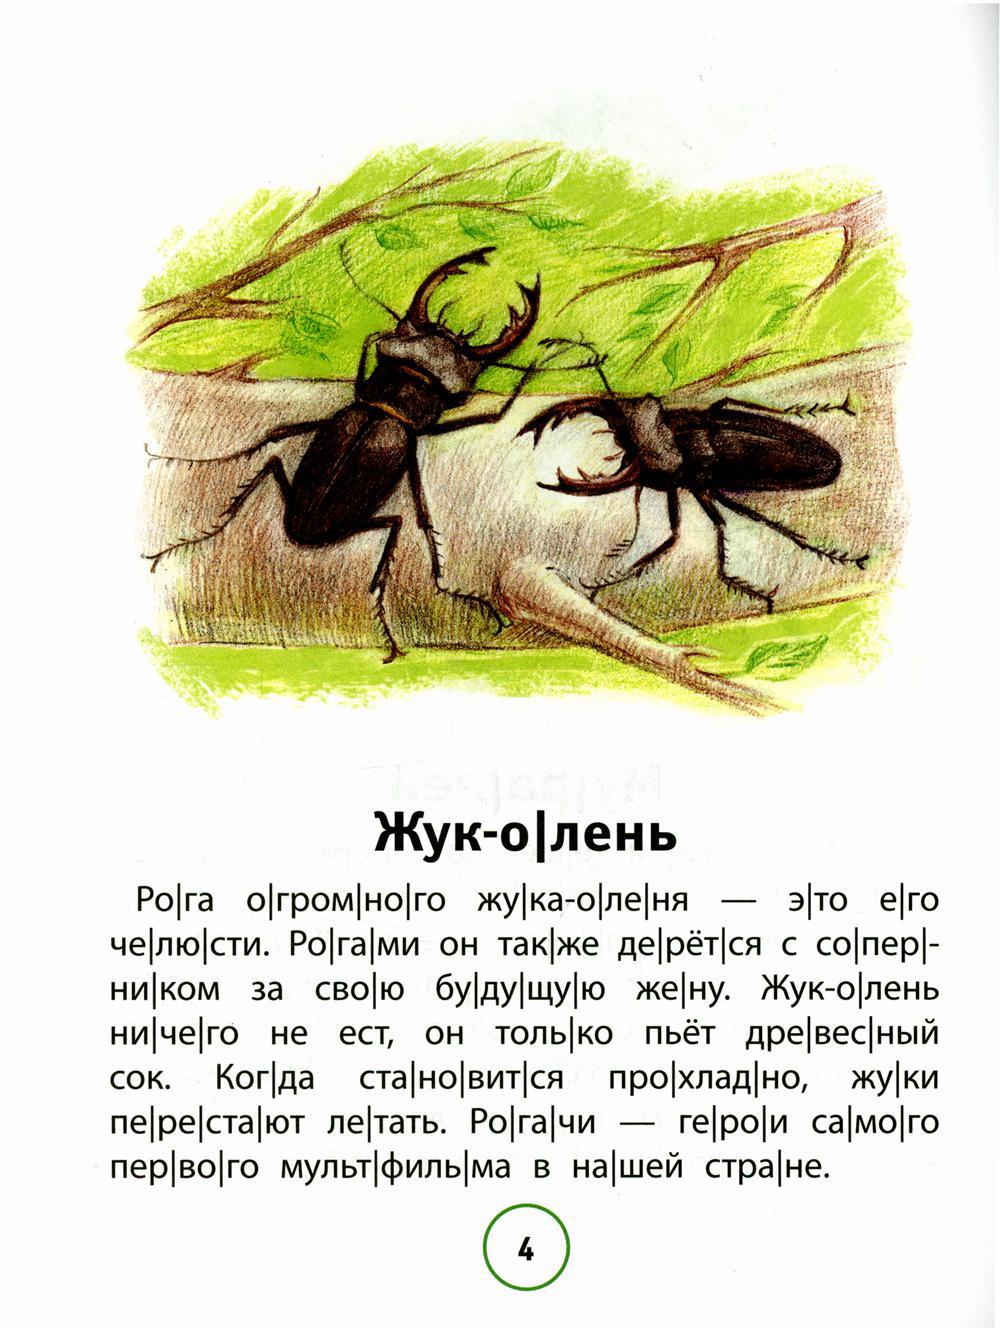 Познавательные тексты для чтения: насекомые